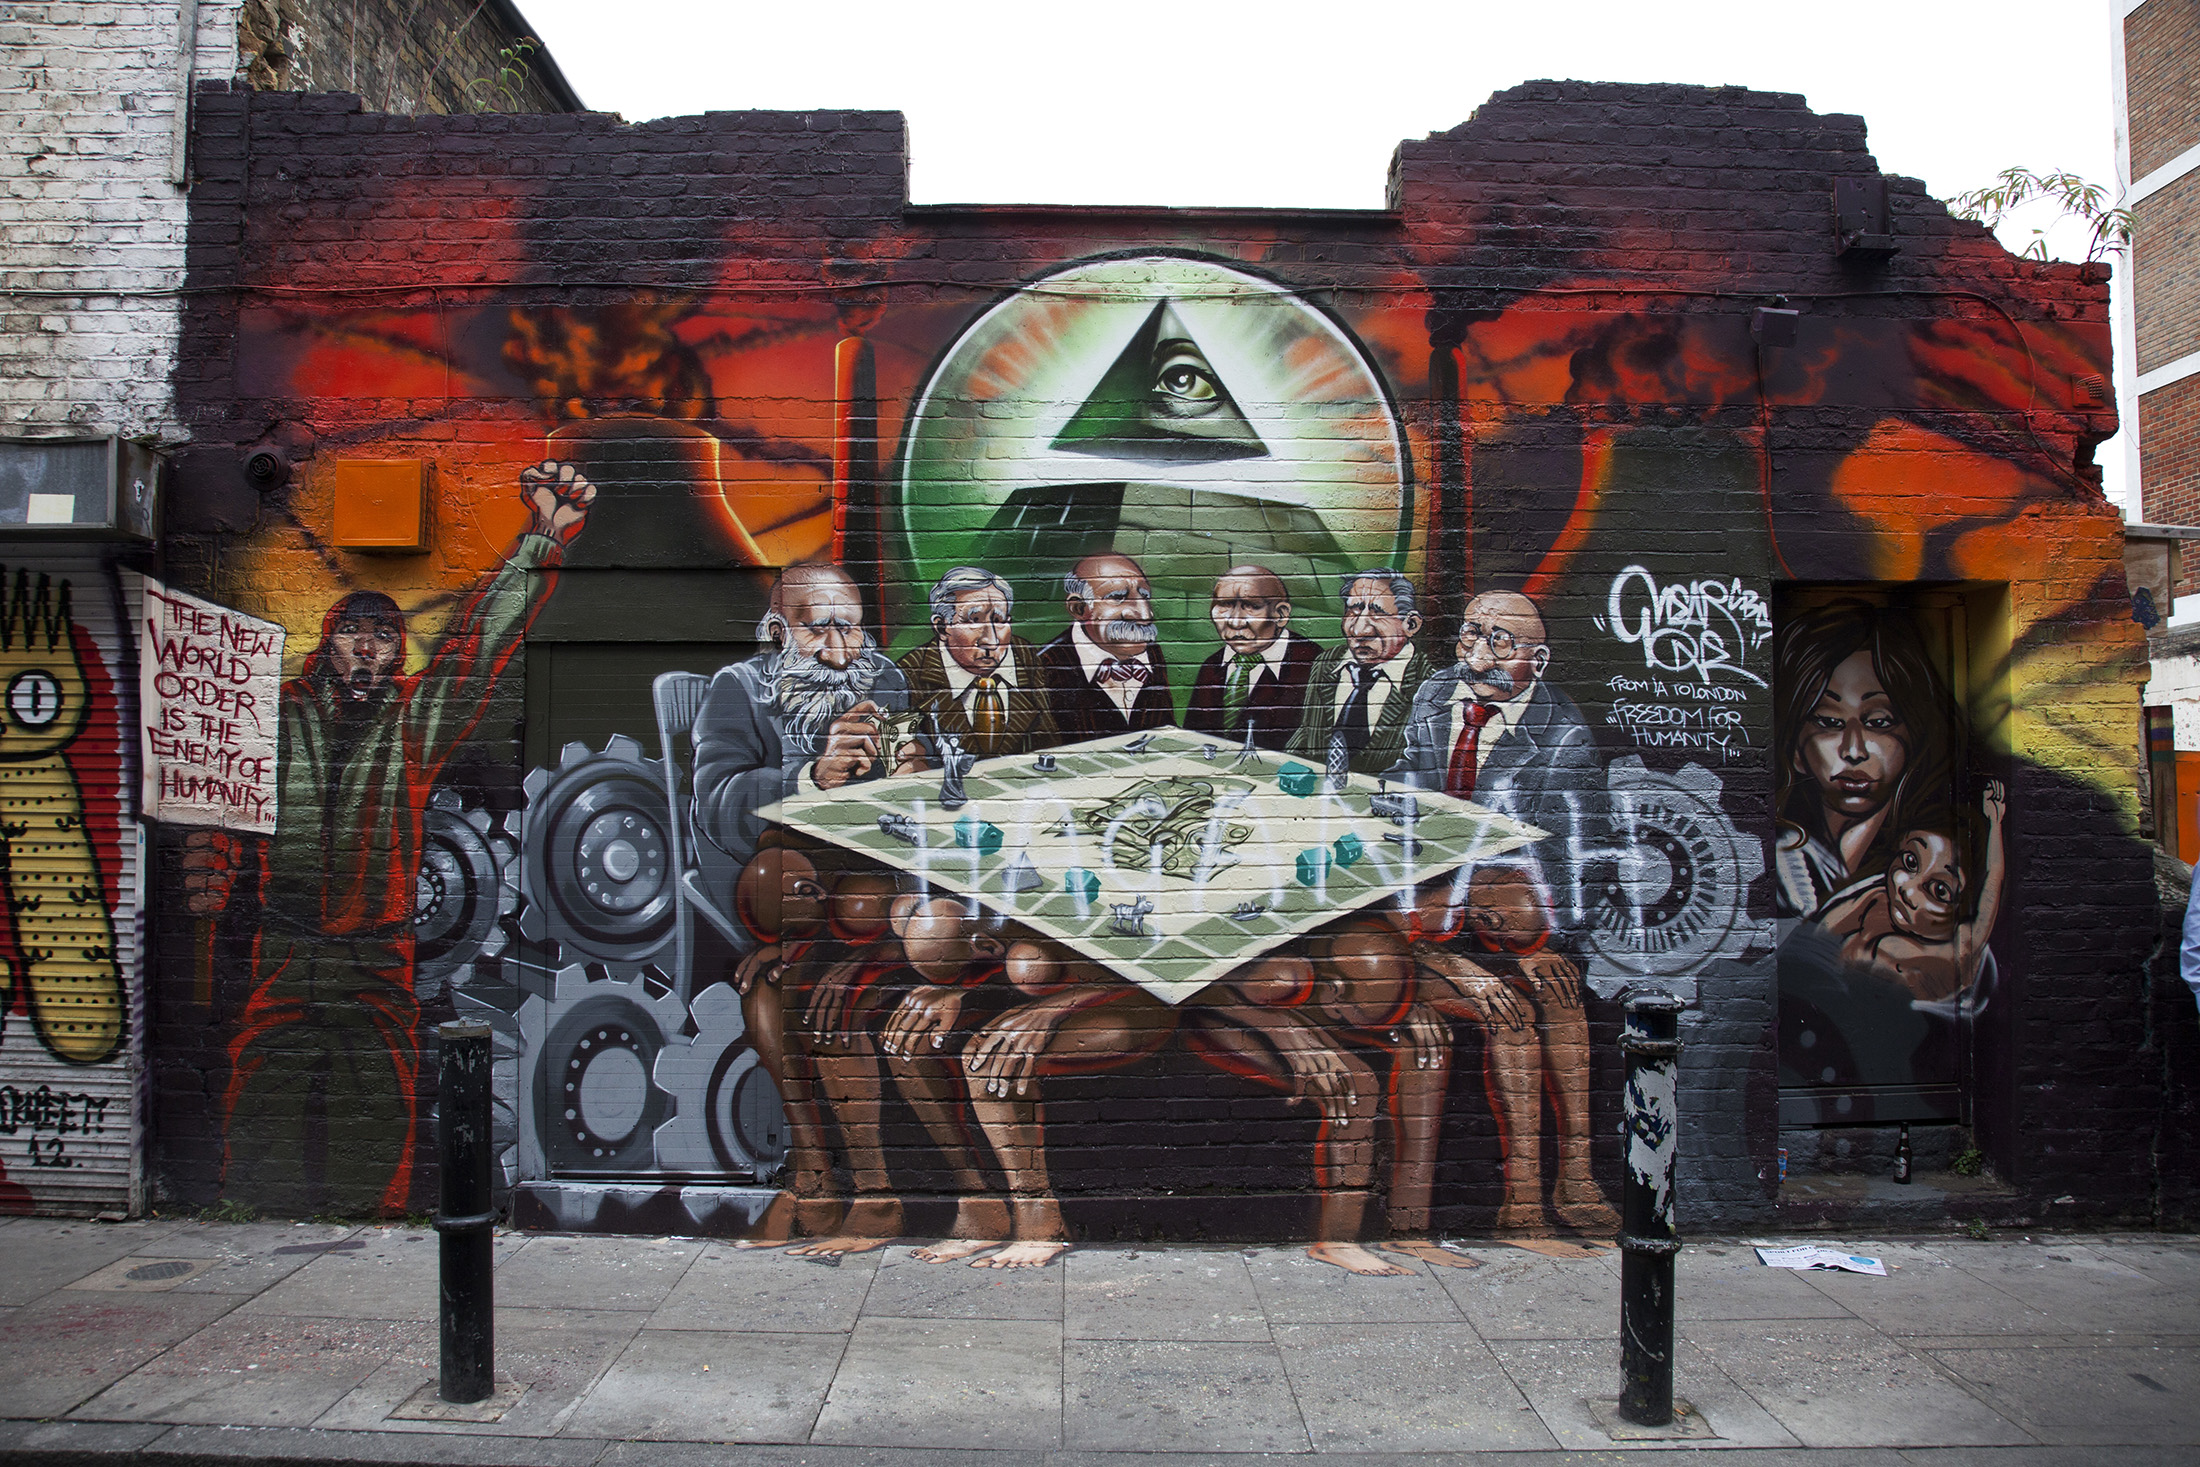 The 'Freedom for Humanity' mural by artist Kalen Ockerman in London in 2012.